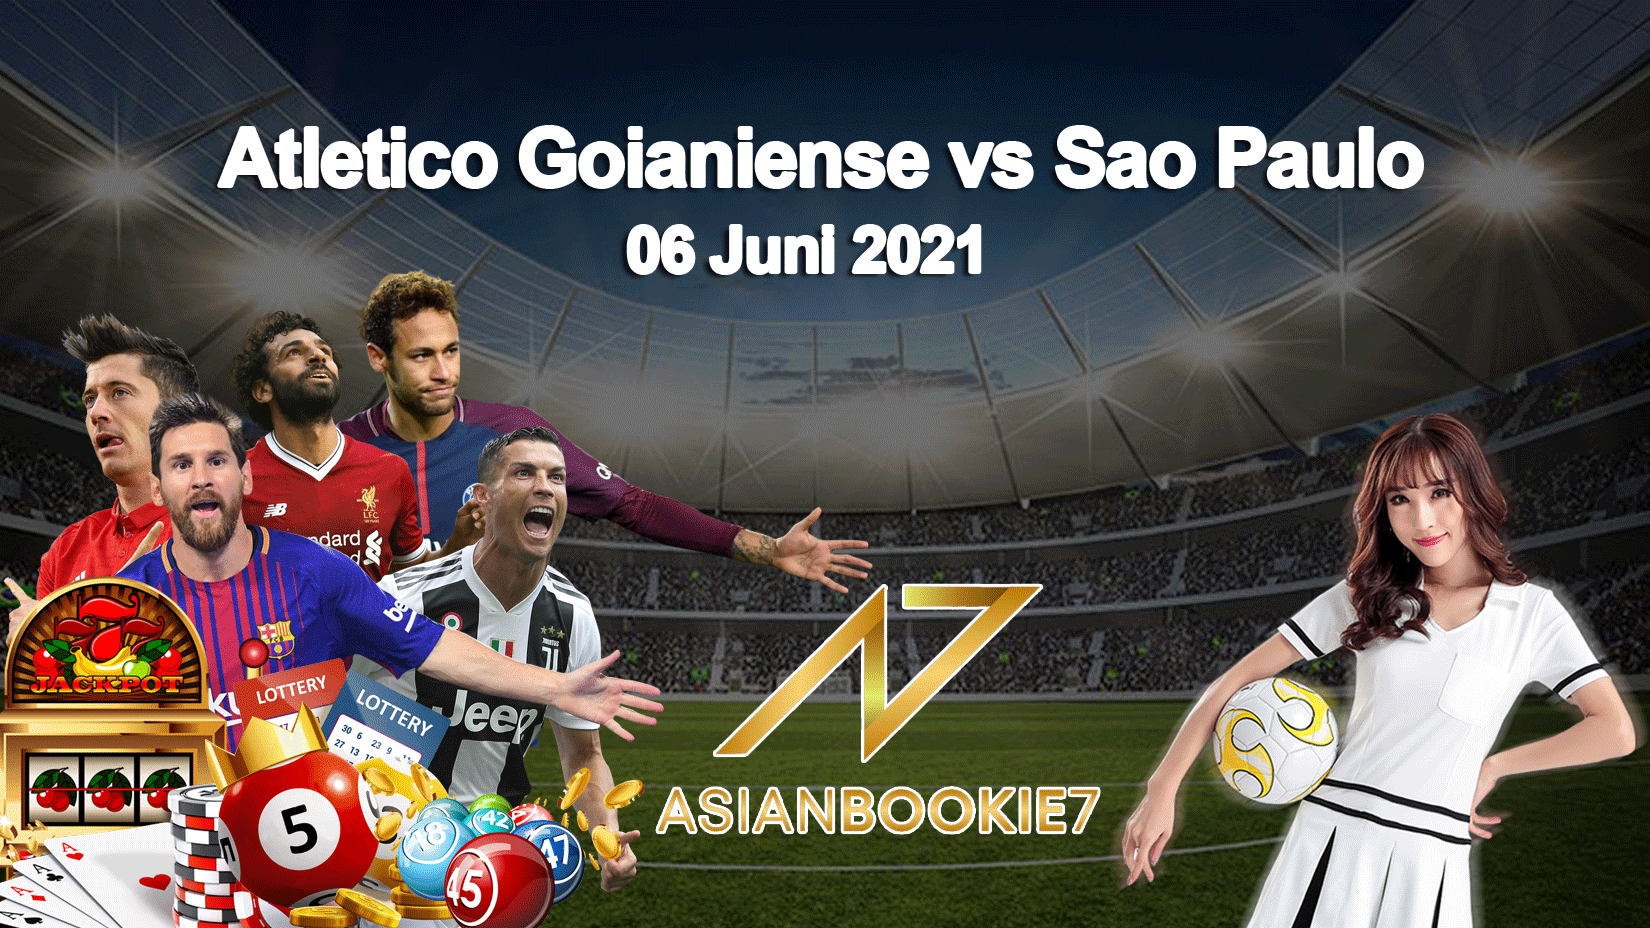 Prediksi Atletico Goianiense vs Sao Paulo 06 Juni 2021